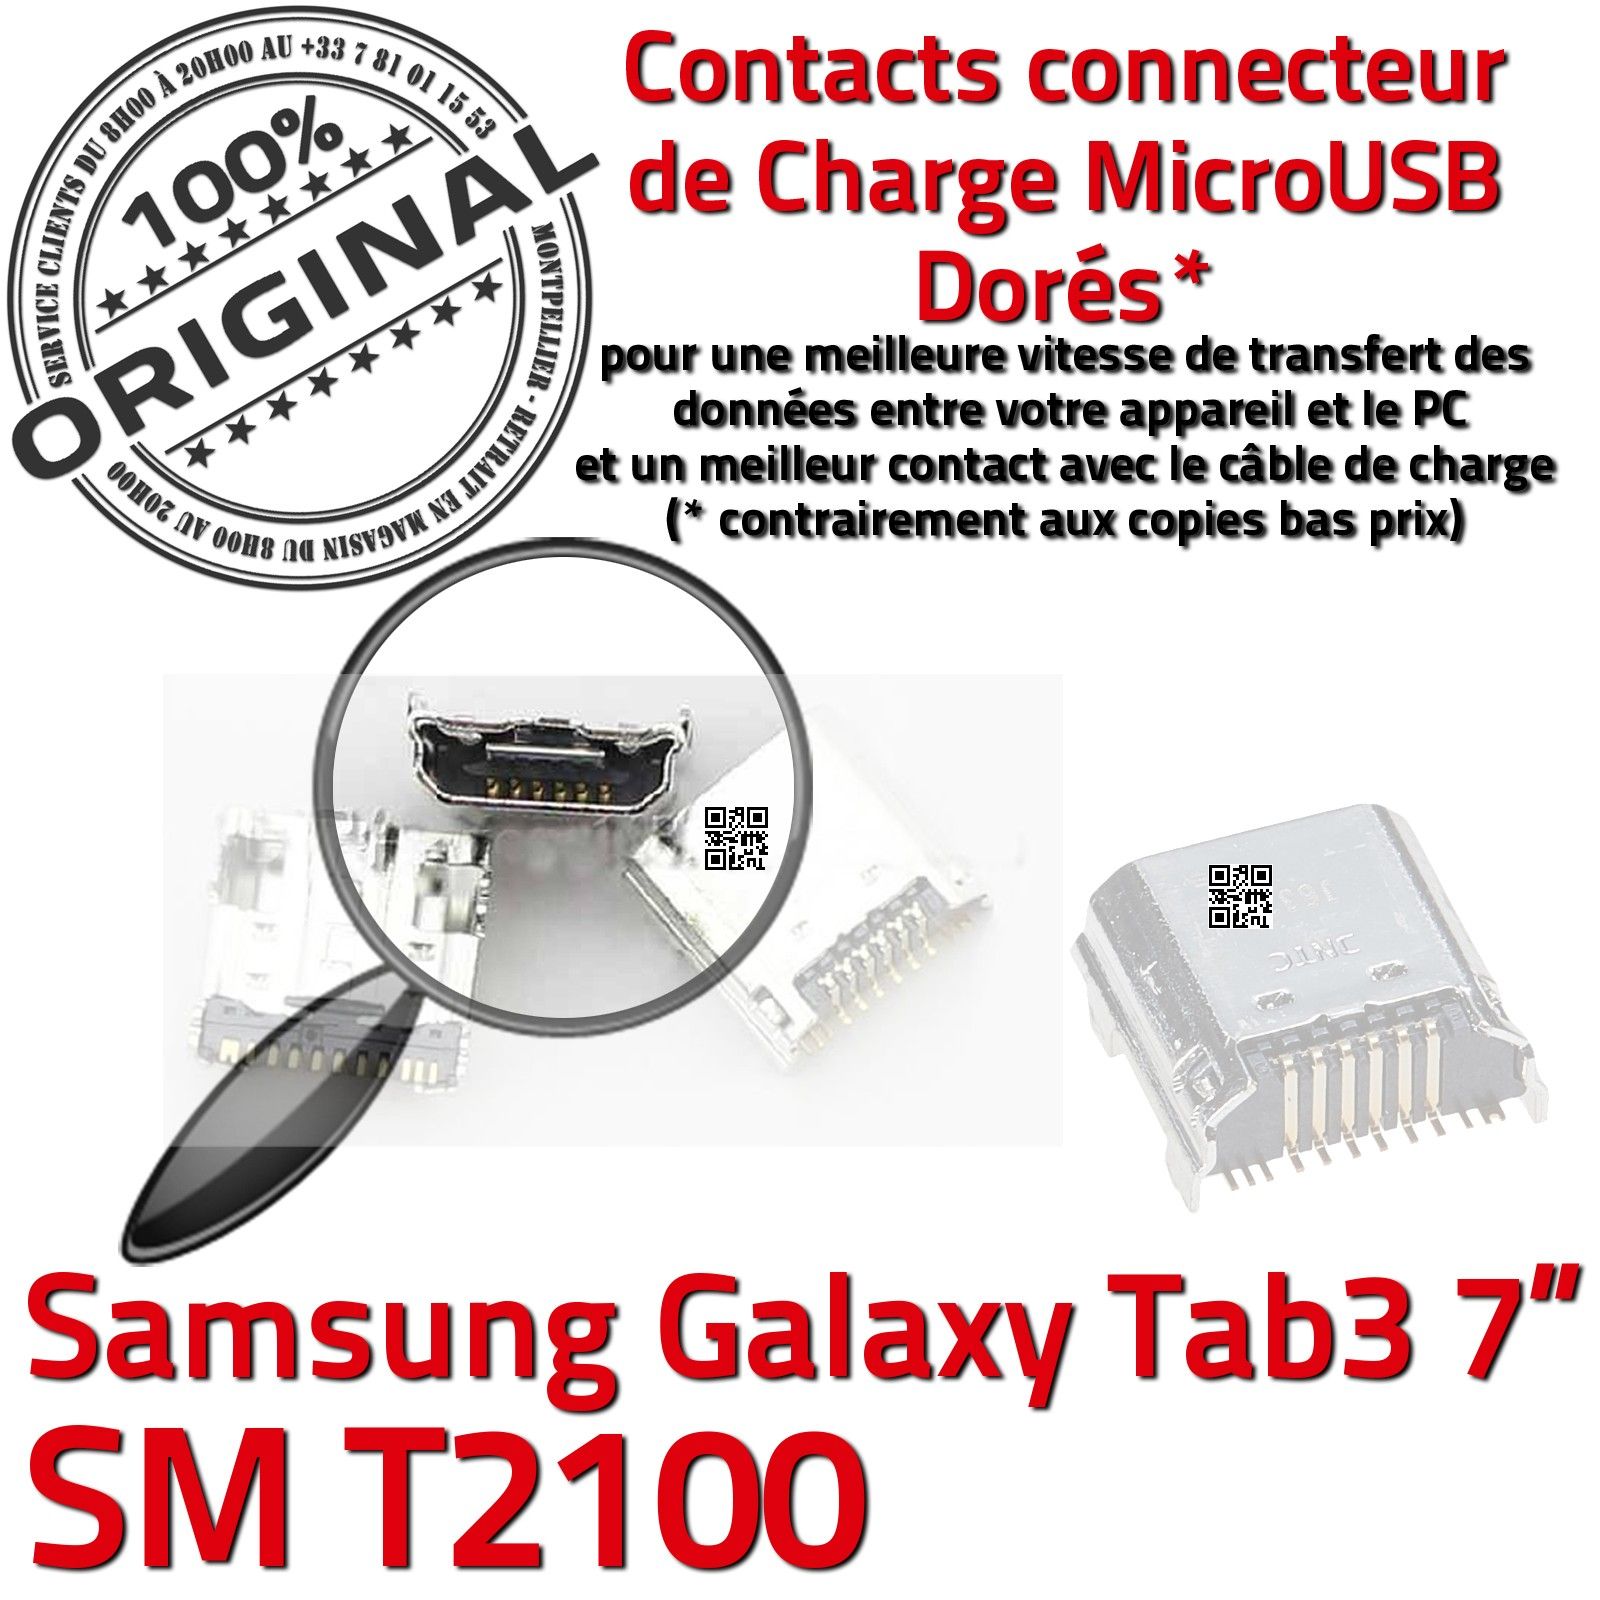 ORIGINAL Samsung Galaxy TAB 3 SM T2100 Connecteur de charge à souder Micro USB Pins Dorés Dock Prise Connector Chargeur 7 inch